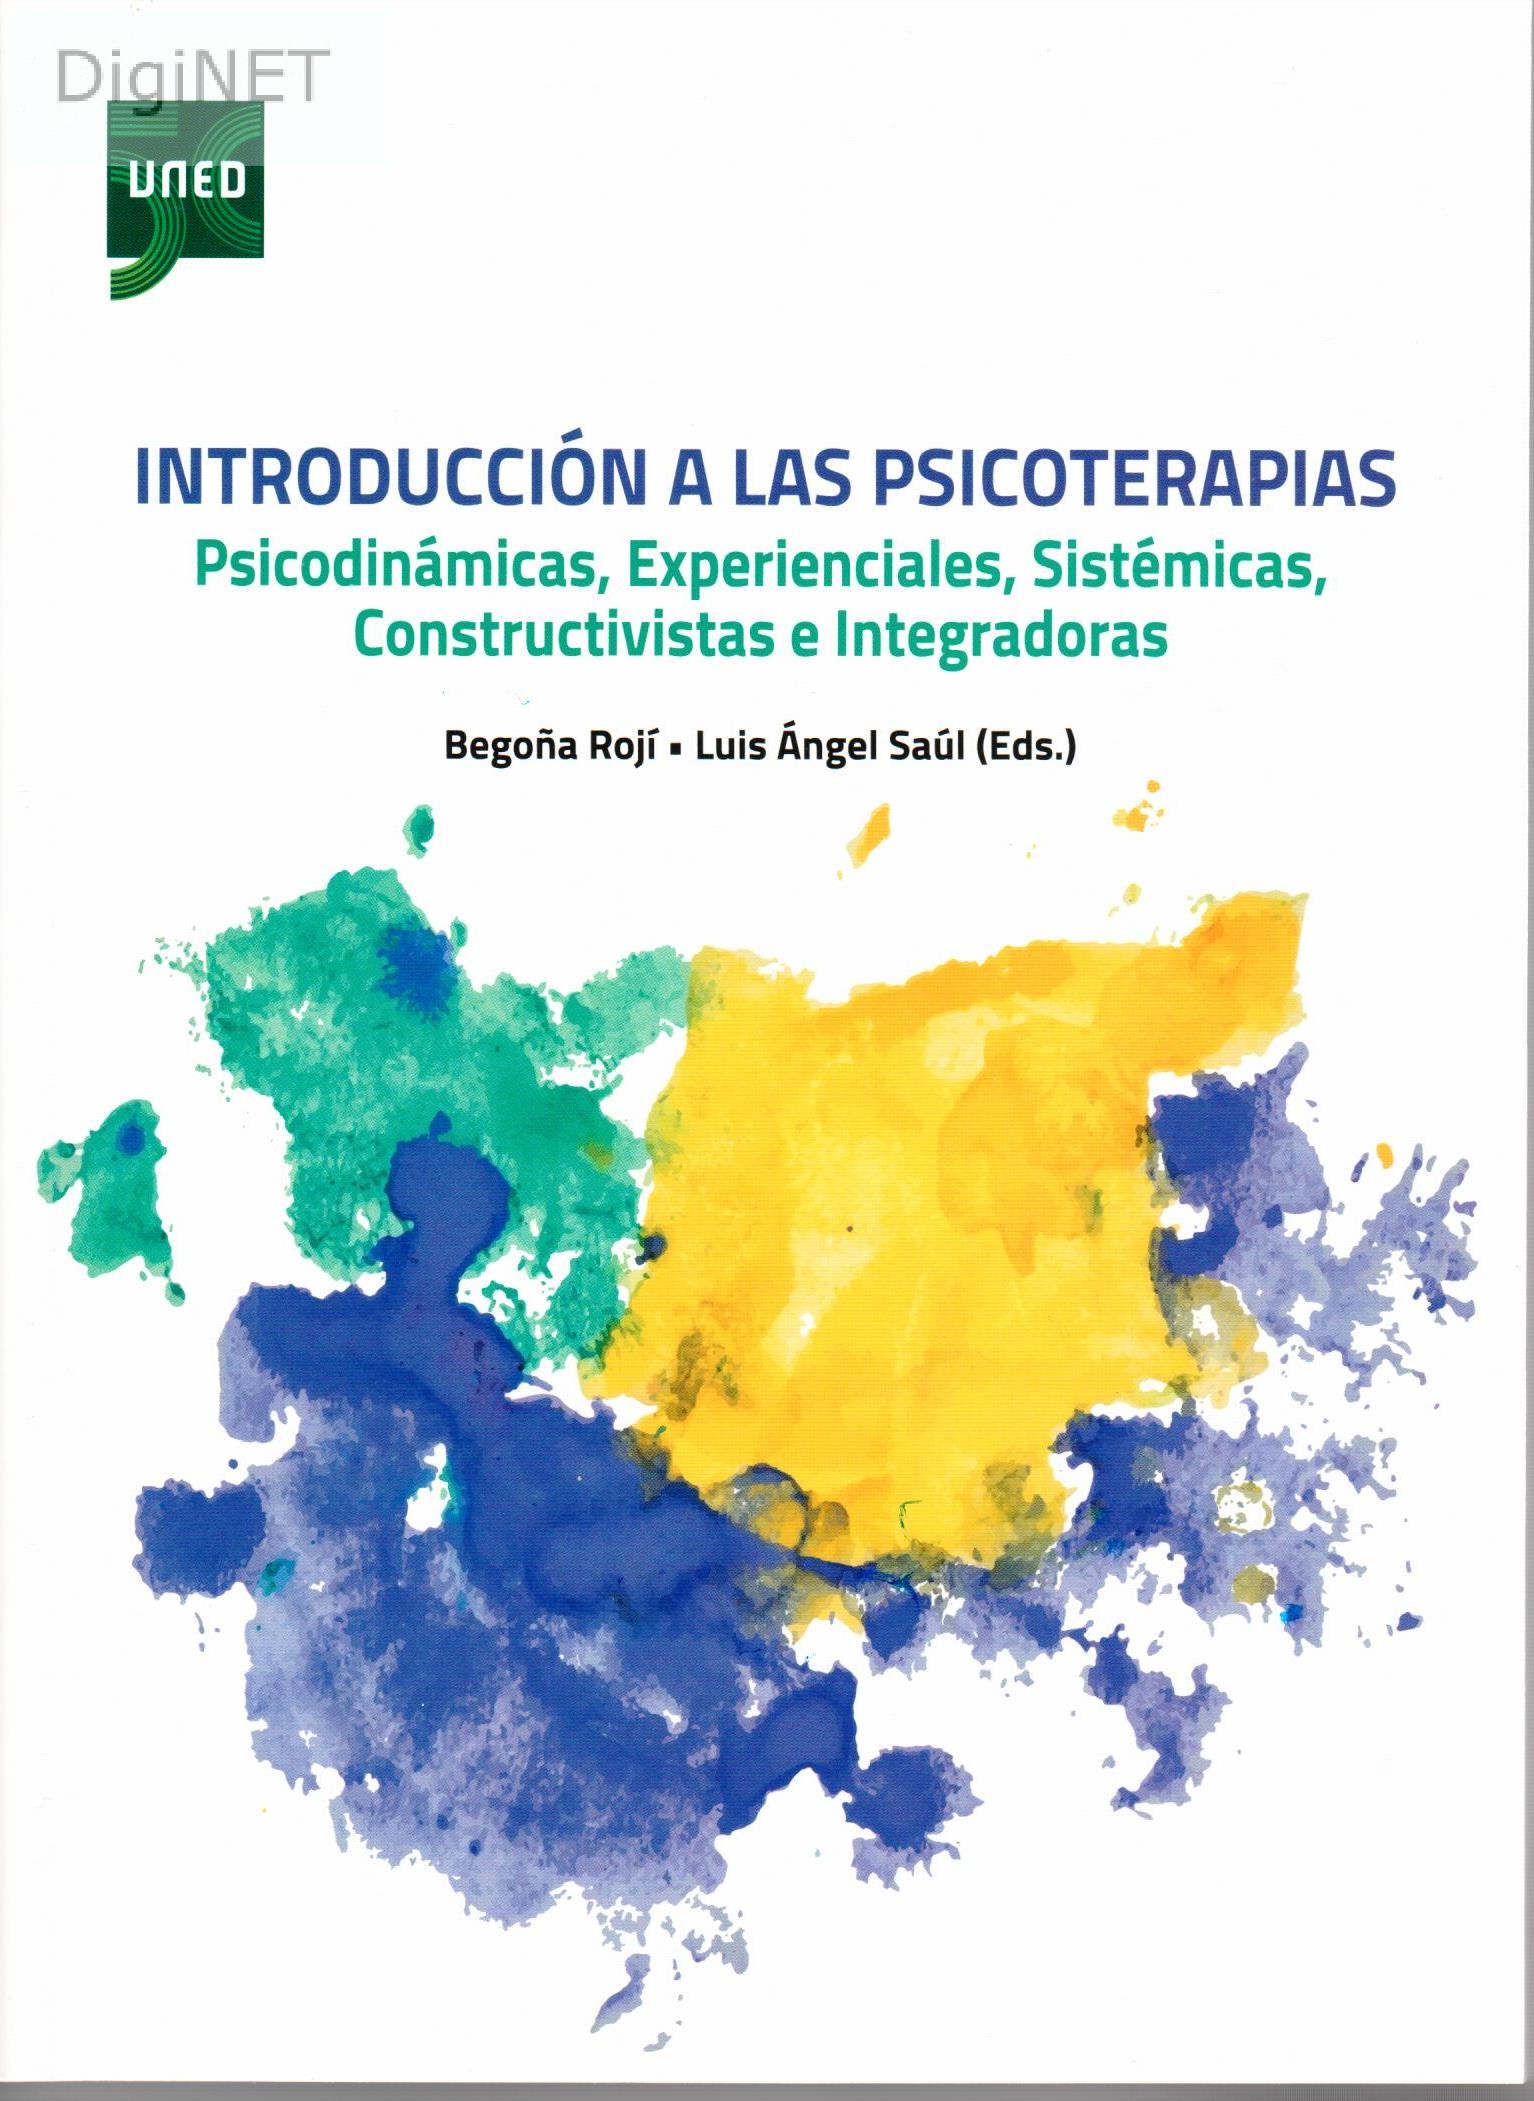 Imagen de portada del libro Introducción a las psicoterapias psicodinámicas, experienciales, sistémicas, constructivistas e integradoras